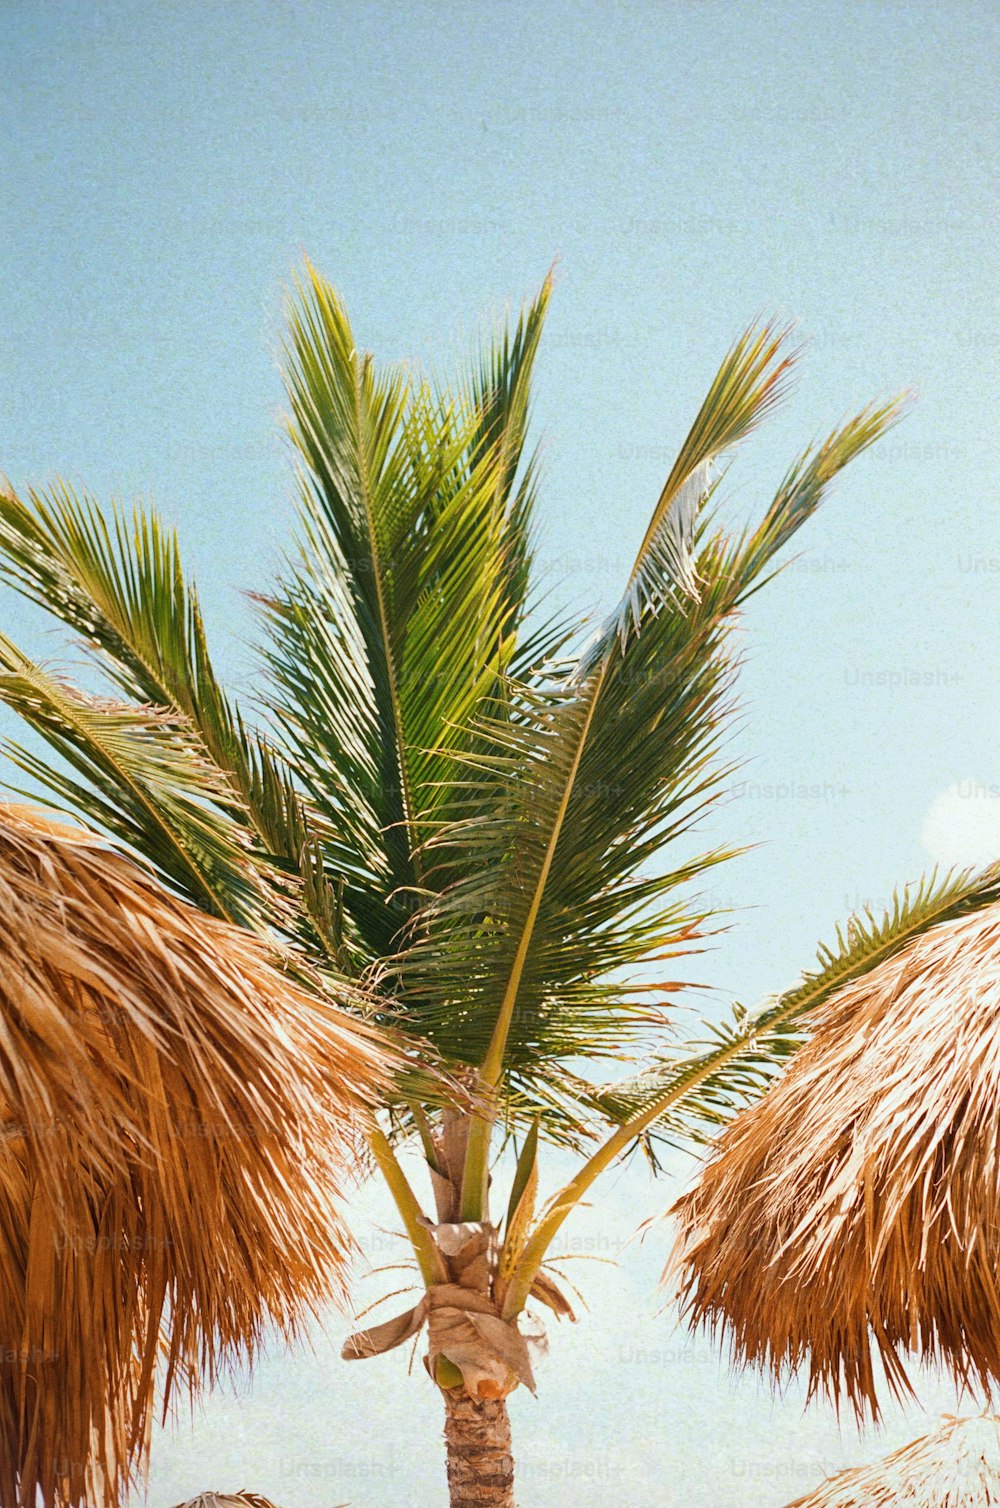 Una palmera en la playa con un cielo azul al fondo